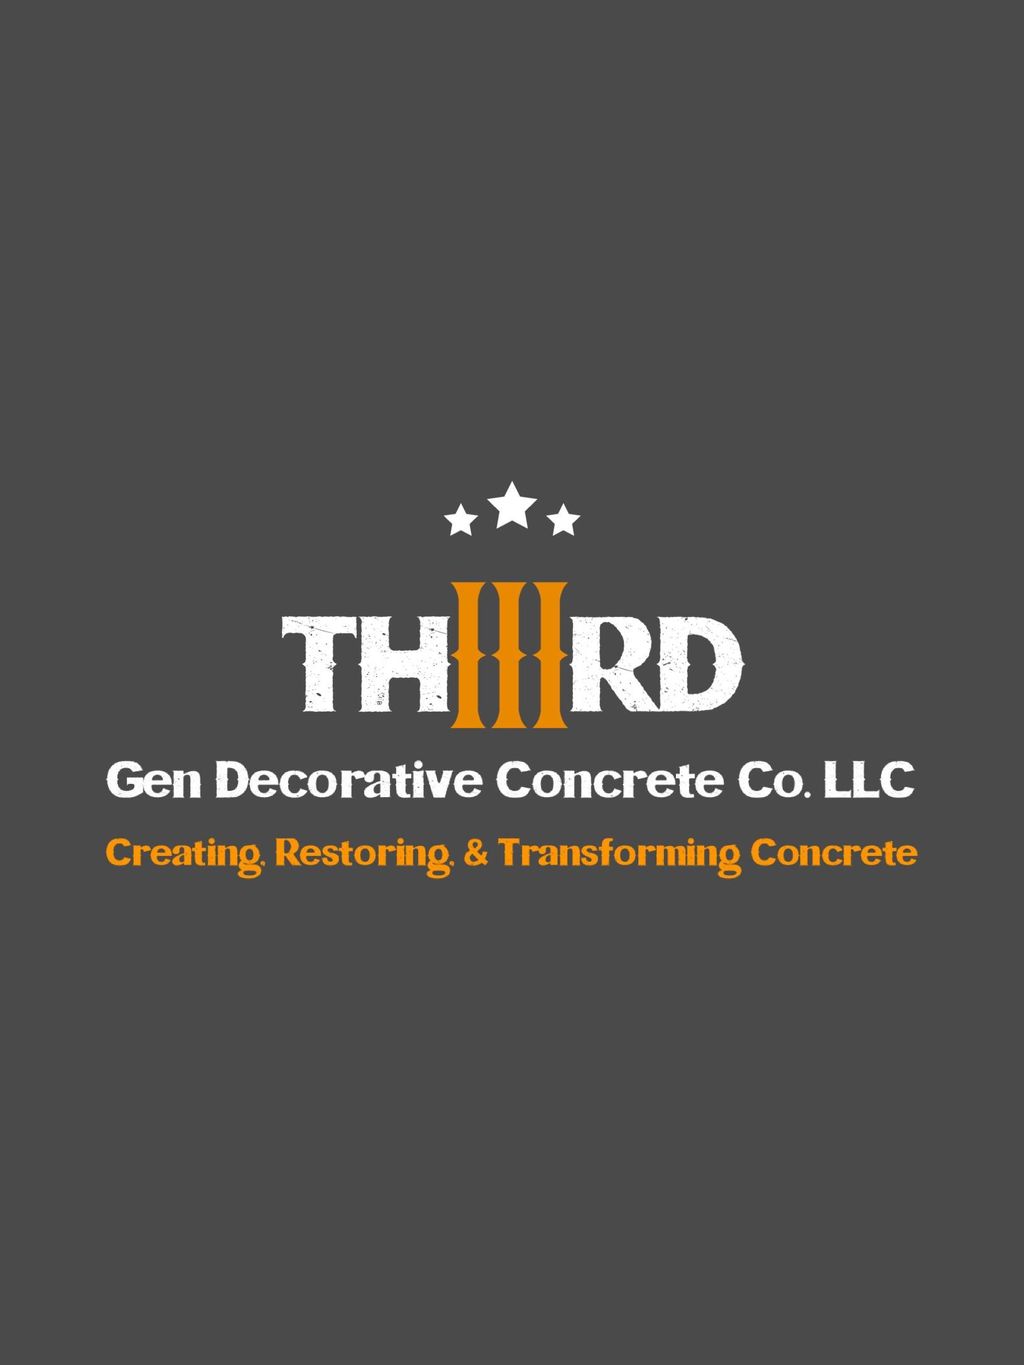 Third Gen Decorative Concrete Co LLC